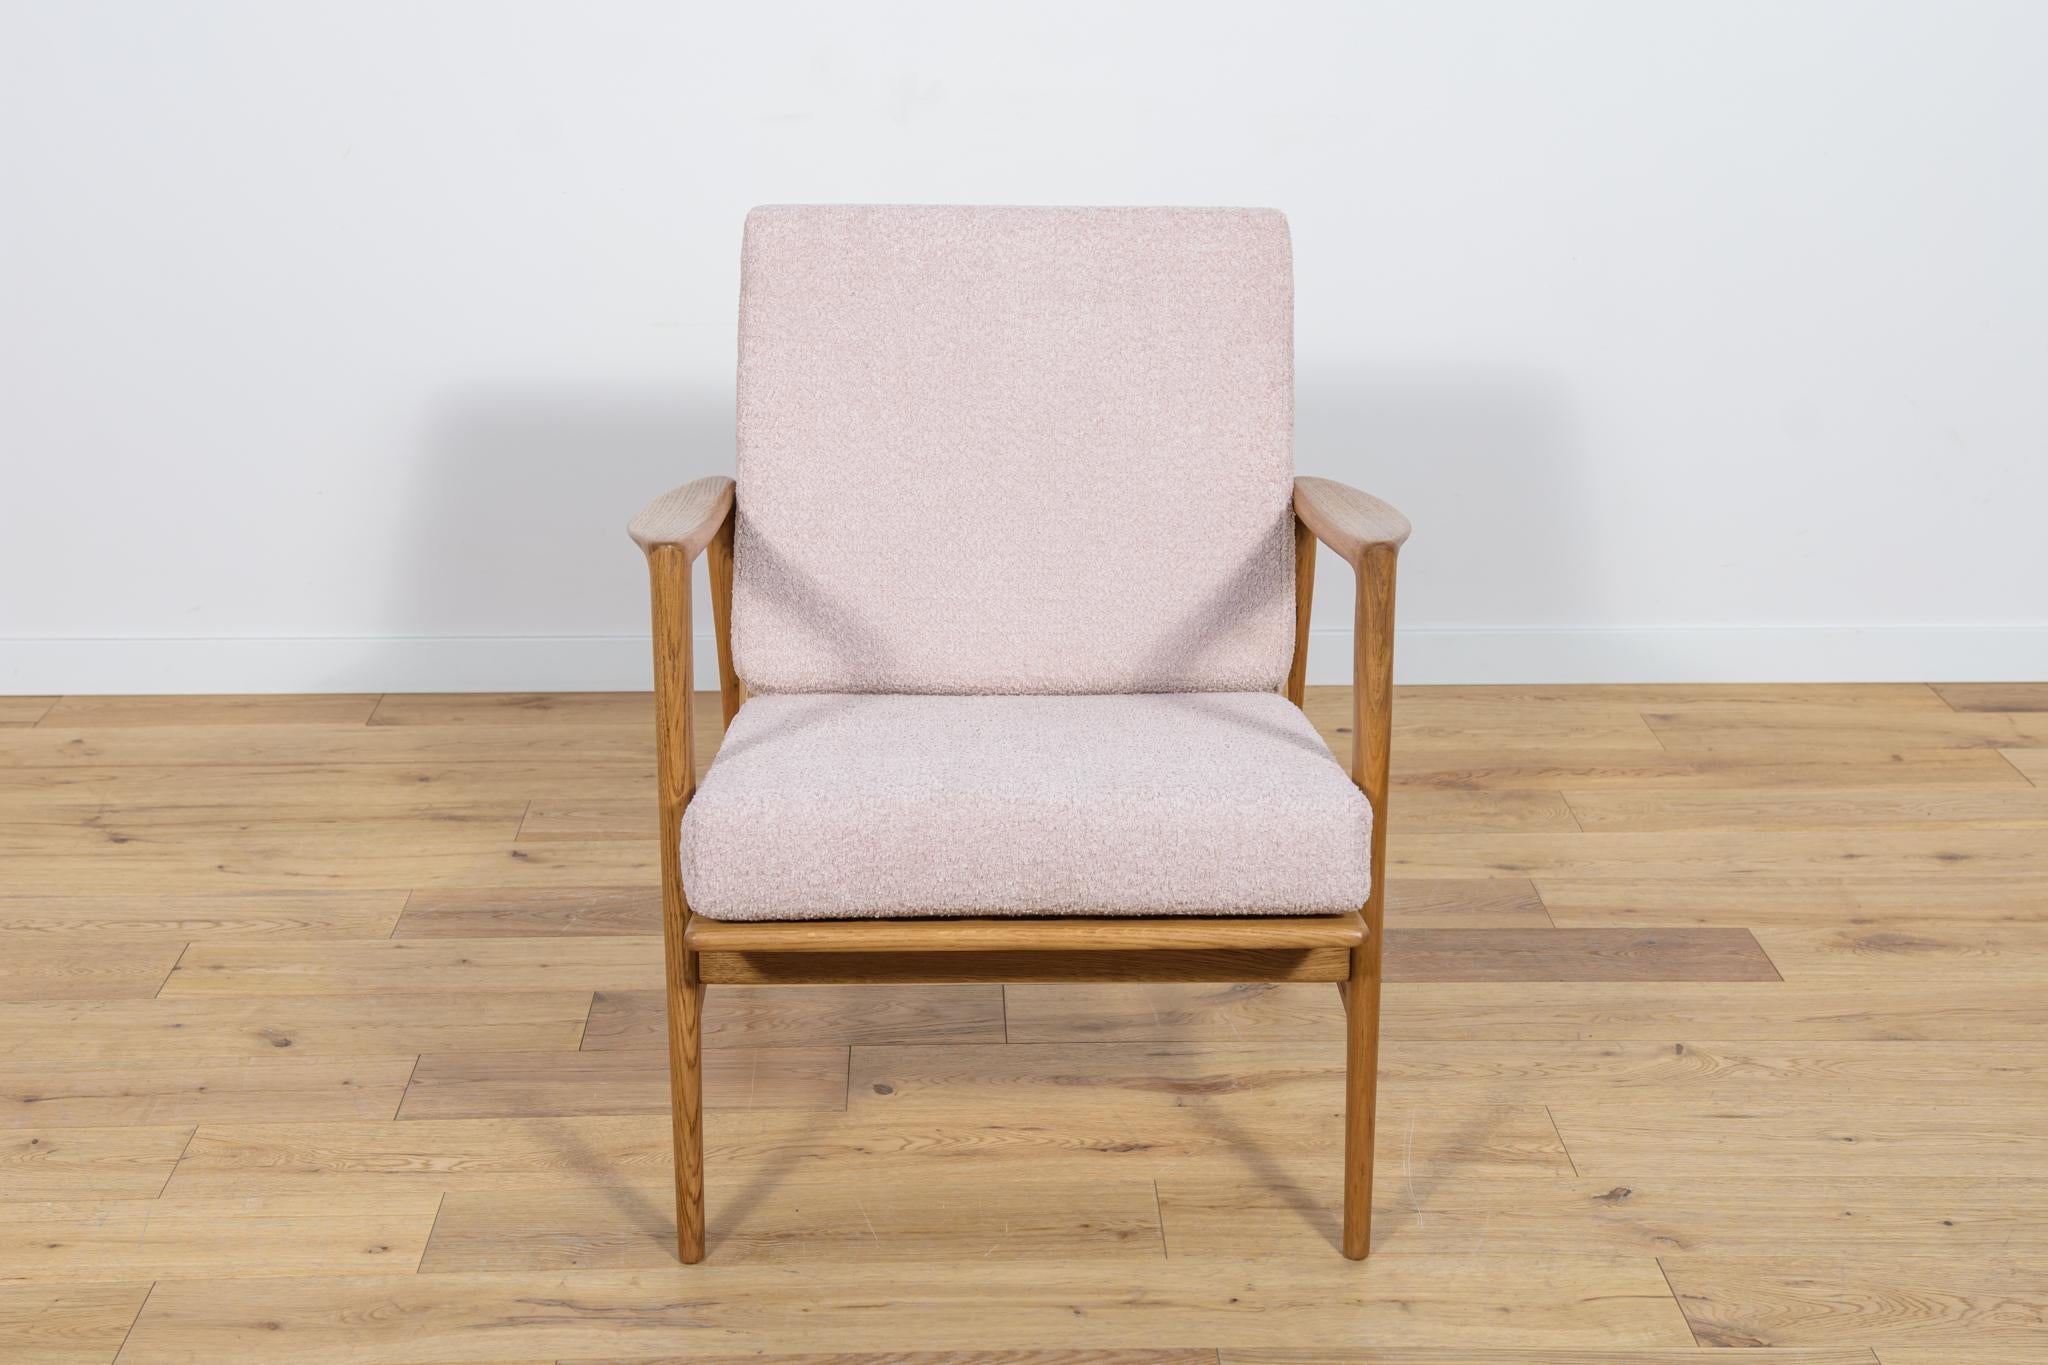 Der Sessel Modell 300-139, der von der polnischen Firma Swarzędzka Furniture Factory hergestellt wurde. Bequemer Sessel mit einer einzigartigen Form.  Die Sessel wurden professionell restauriert. Die Holzstruktur wurde gereinigt und mit einem